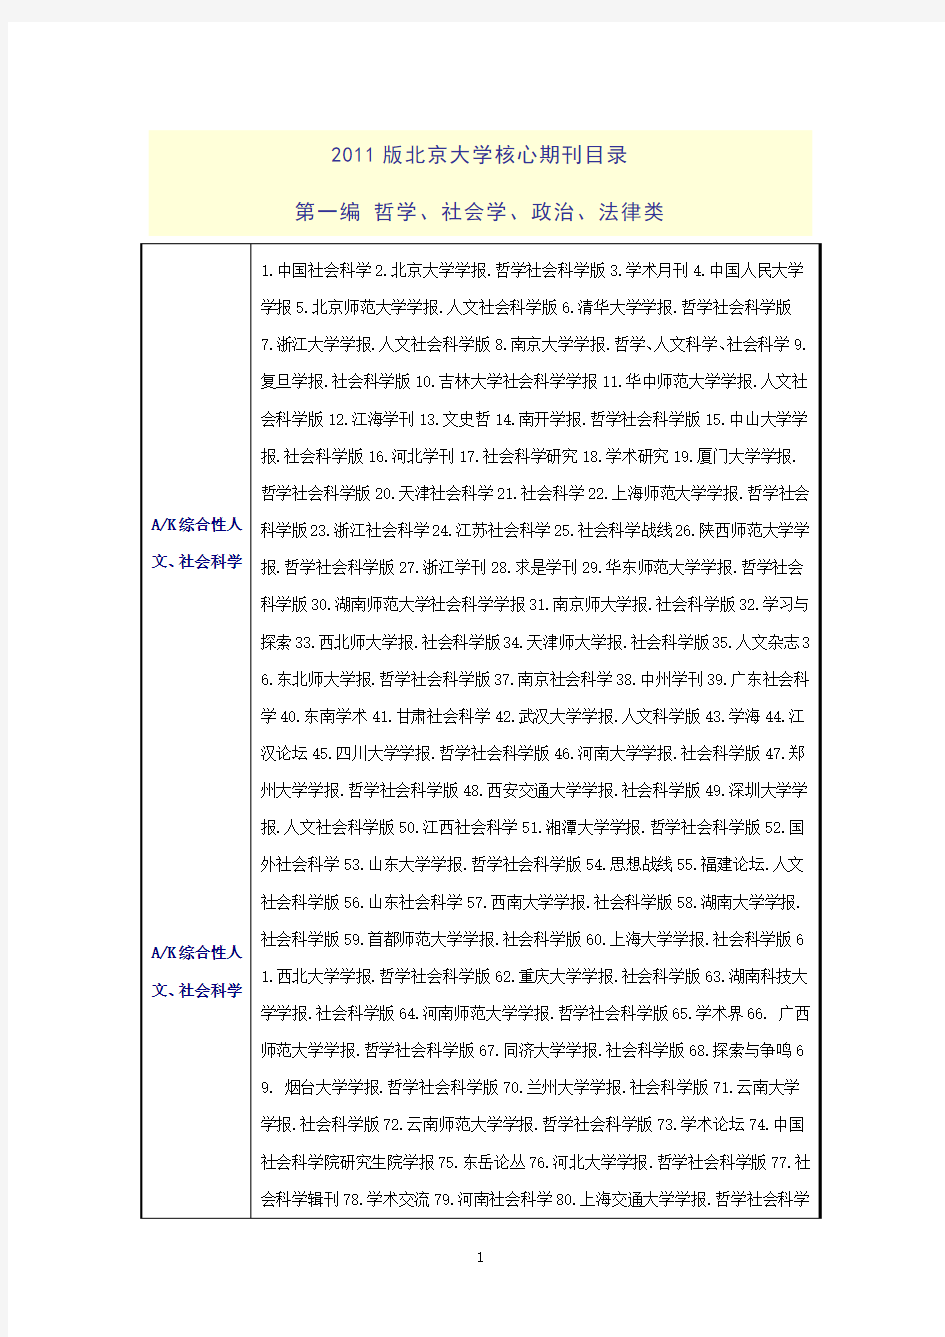 中文核心期刊要目总览(最新版)